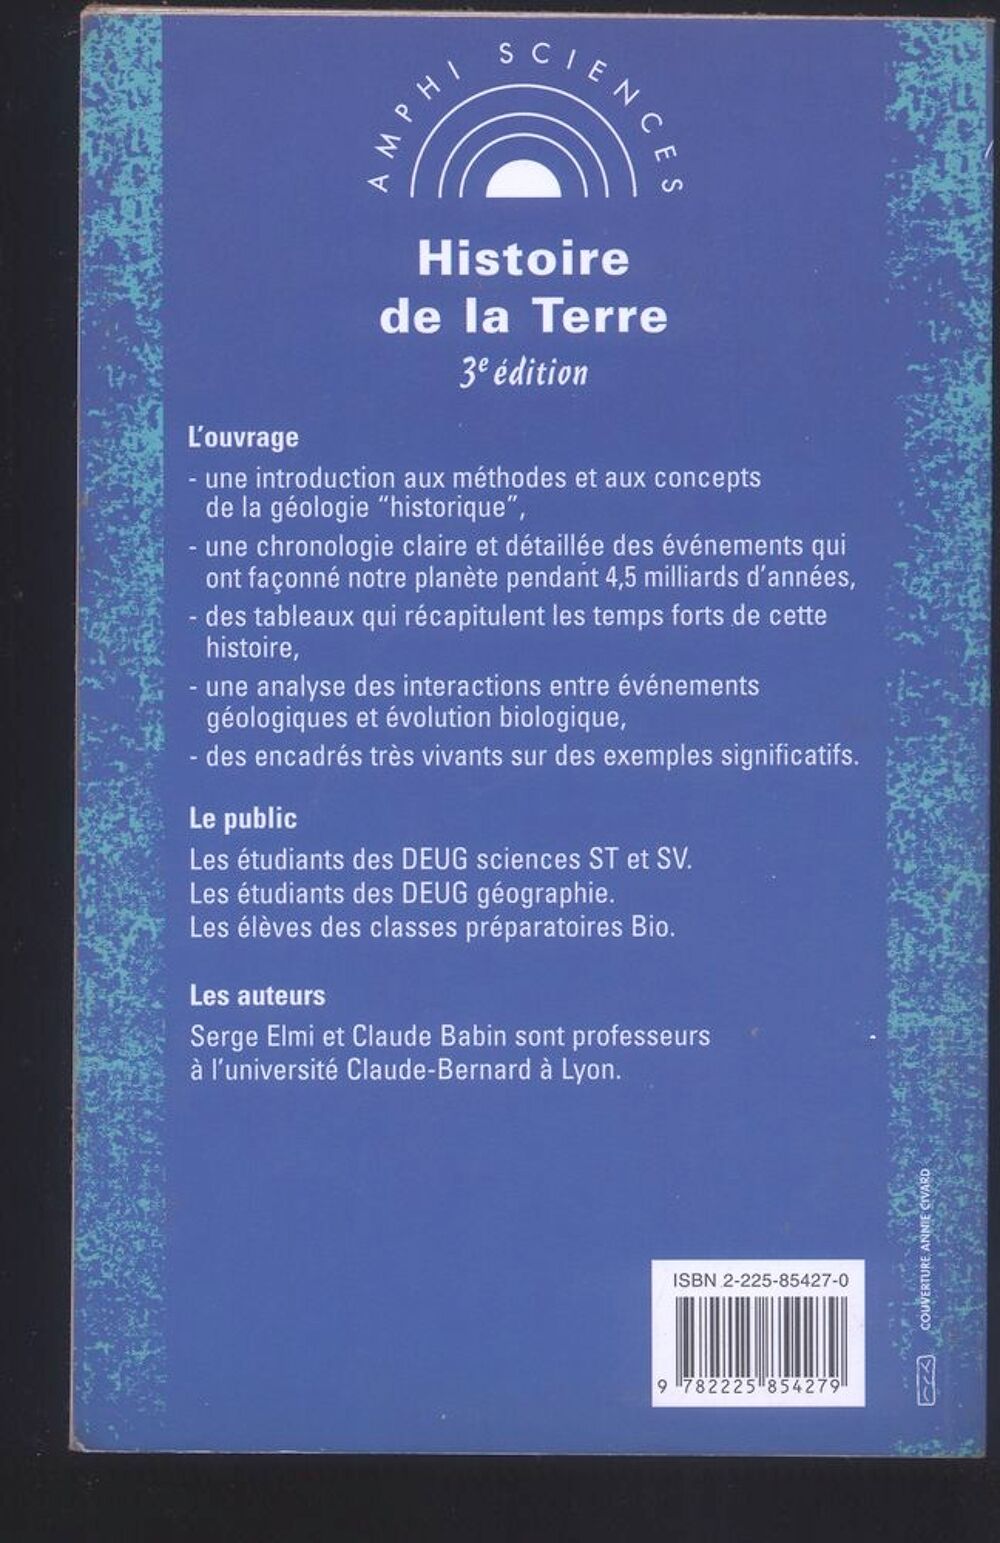 Histoire de la Terre
Serge Elmi, Claude Babin Livres et BD